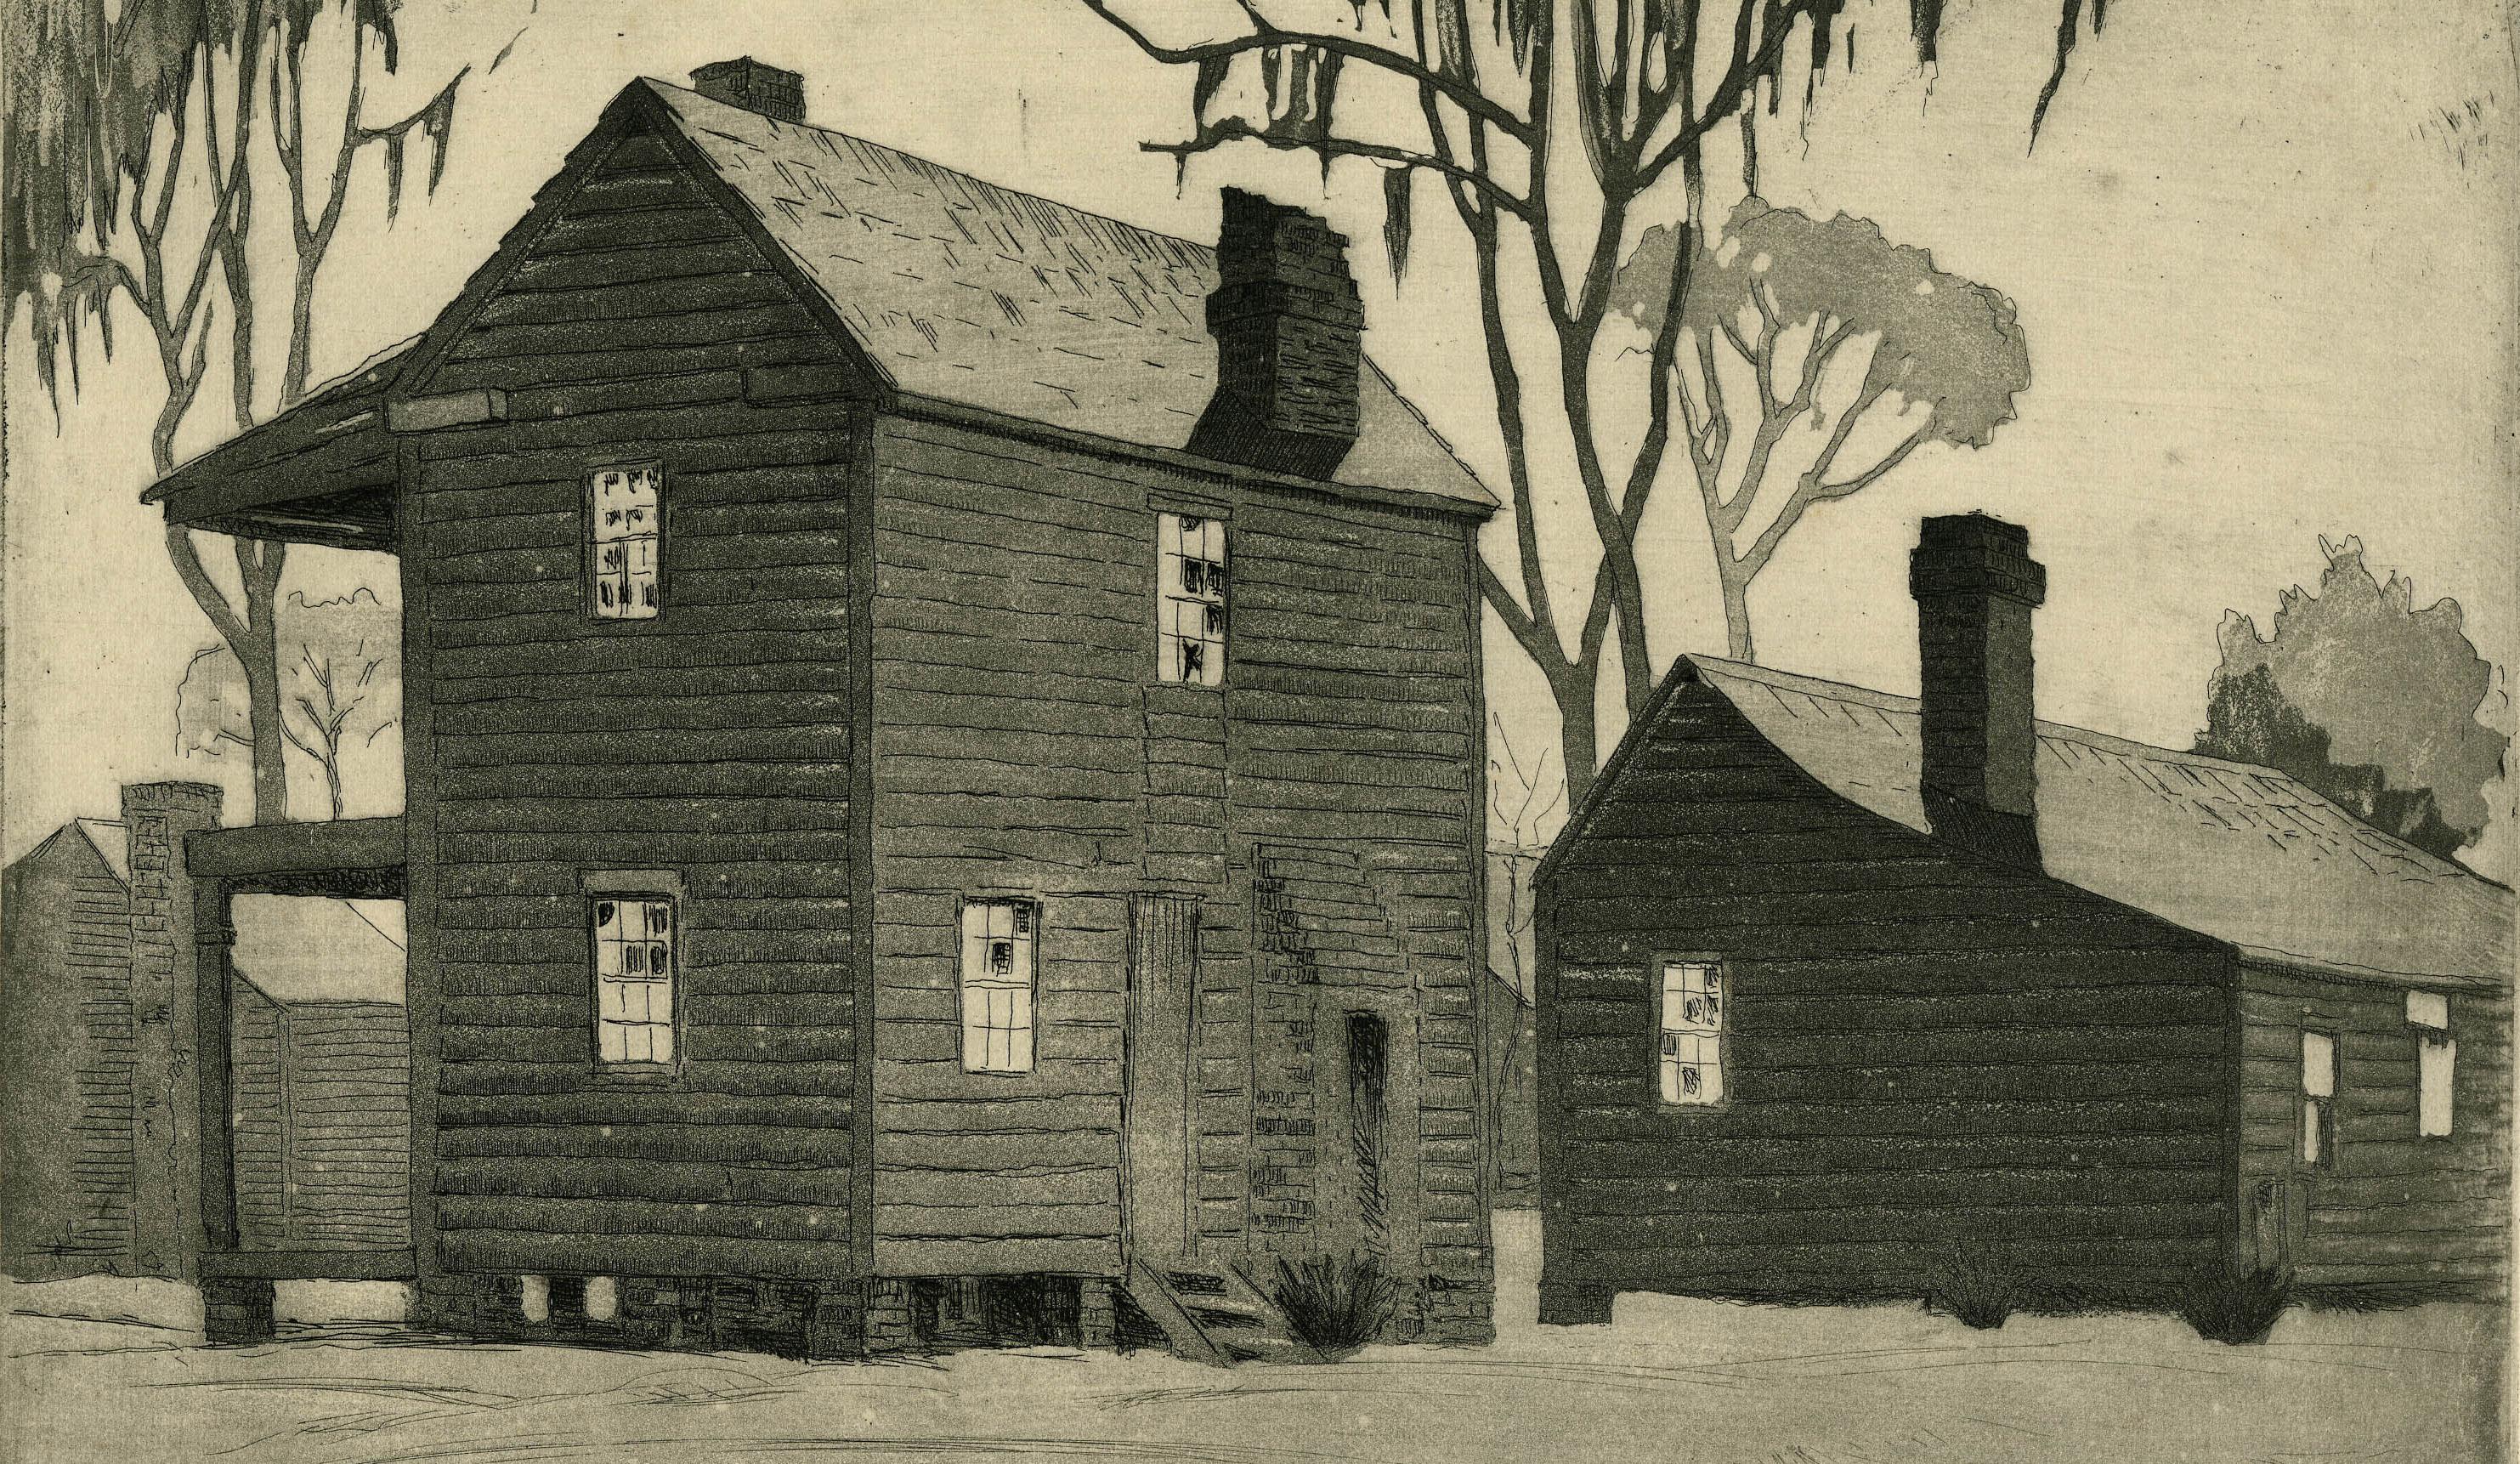 Desolation, A.C.C. ou Deserted Cabins, Beauford, A.I.C.
Eau-forte et aquatinte, c.C. 1930
Signé par l'artiste au crayon en bas à droite (voir photo)
Annoté 